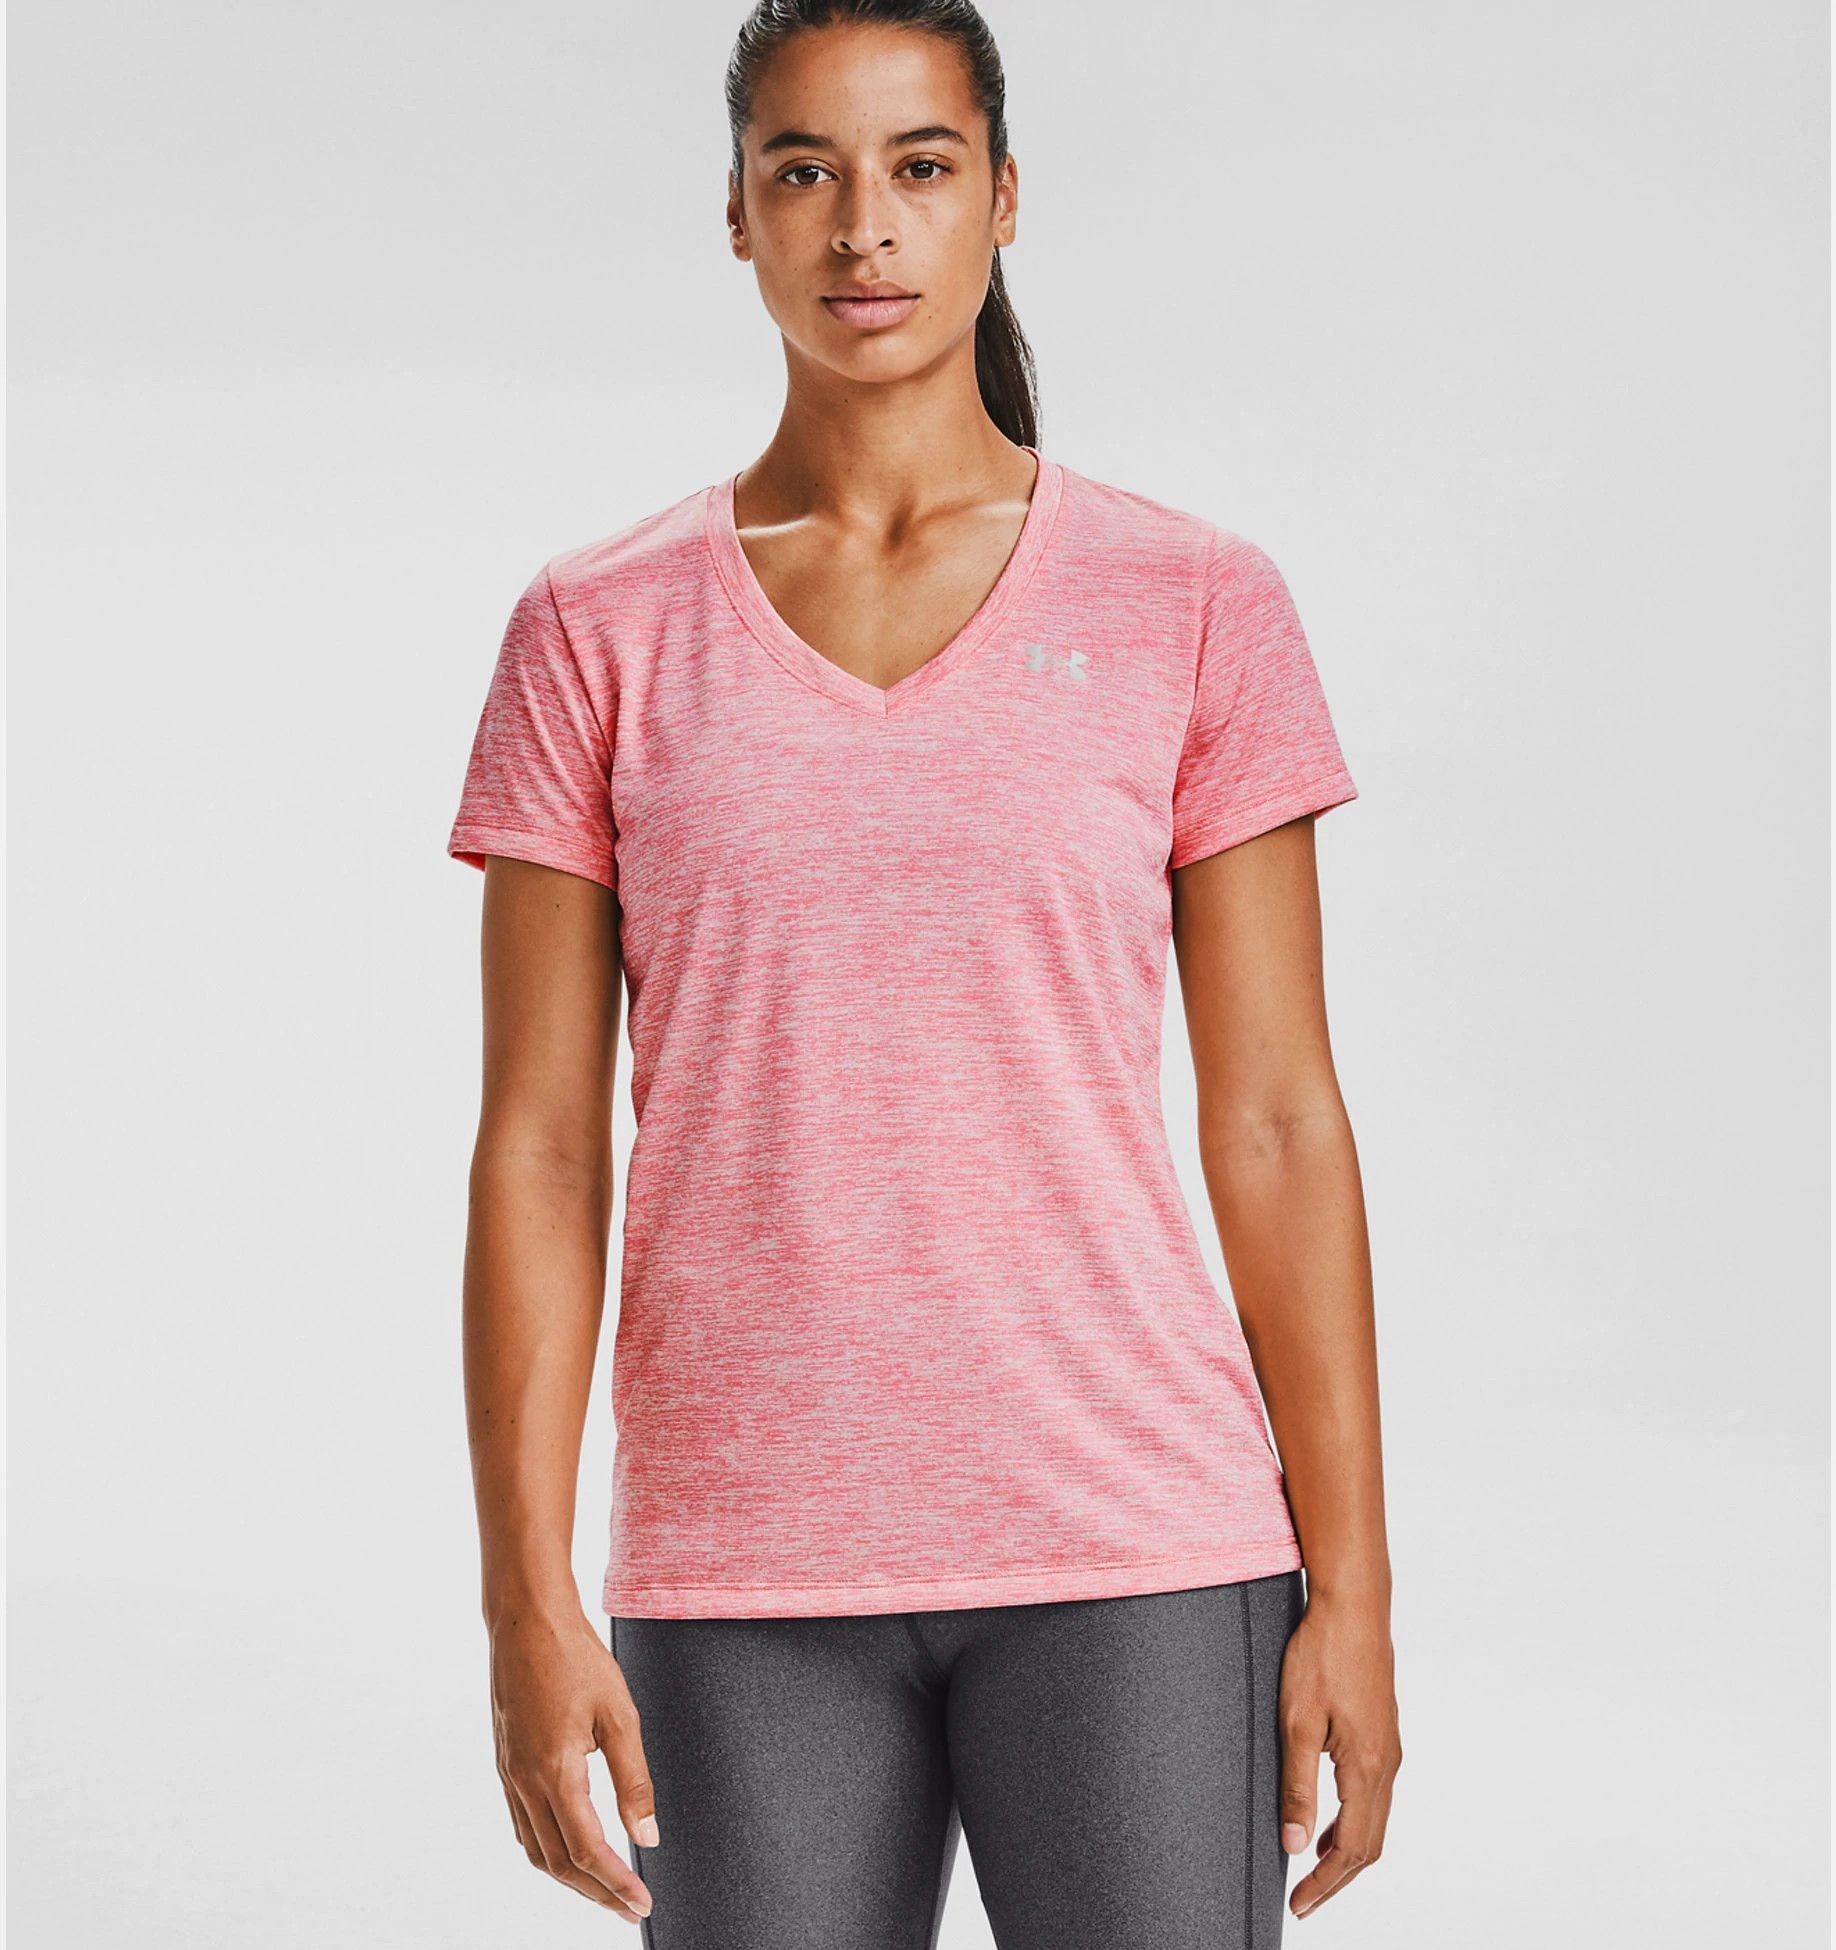 dein Unihockey Shop – Under Armour T-Shirt mit V-Ausschnitt Twist Tech  Damen pink lemonade - Stockschlag